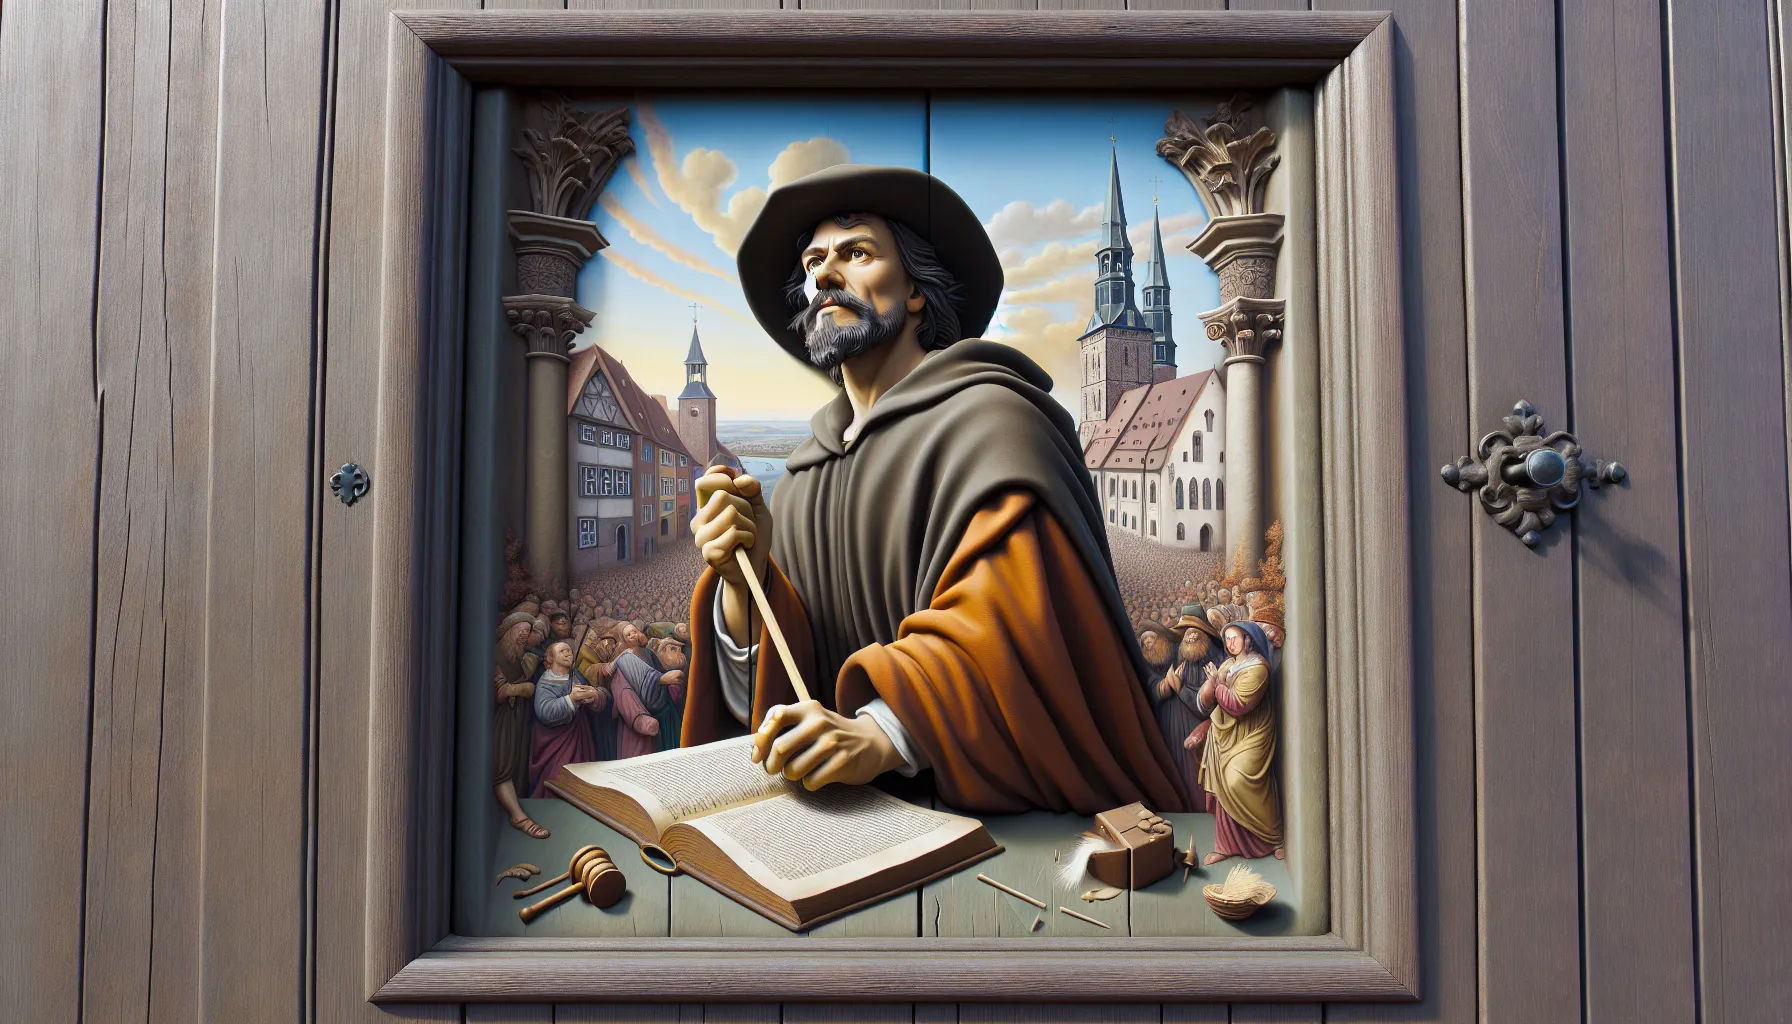 La imagen muestra a Martín Lutero clavando sus 95 tesis en la puerta de la iglesia de Wittenberg, simbolizando el inicio de la Reforma Protestante.